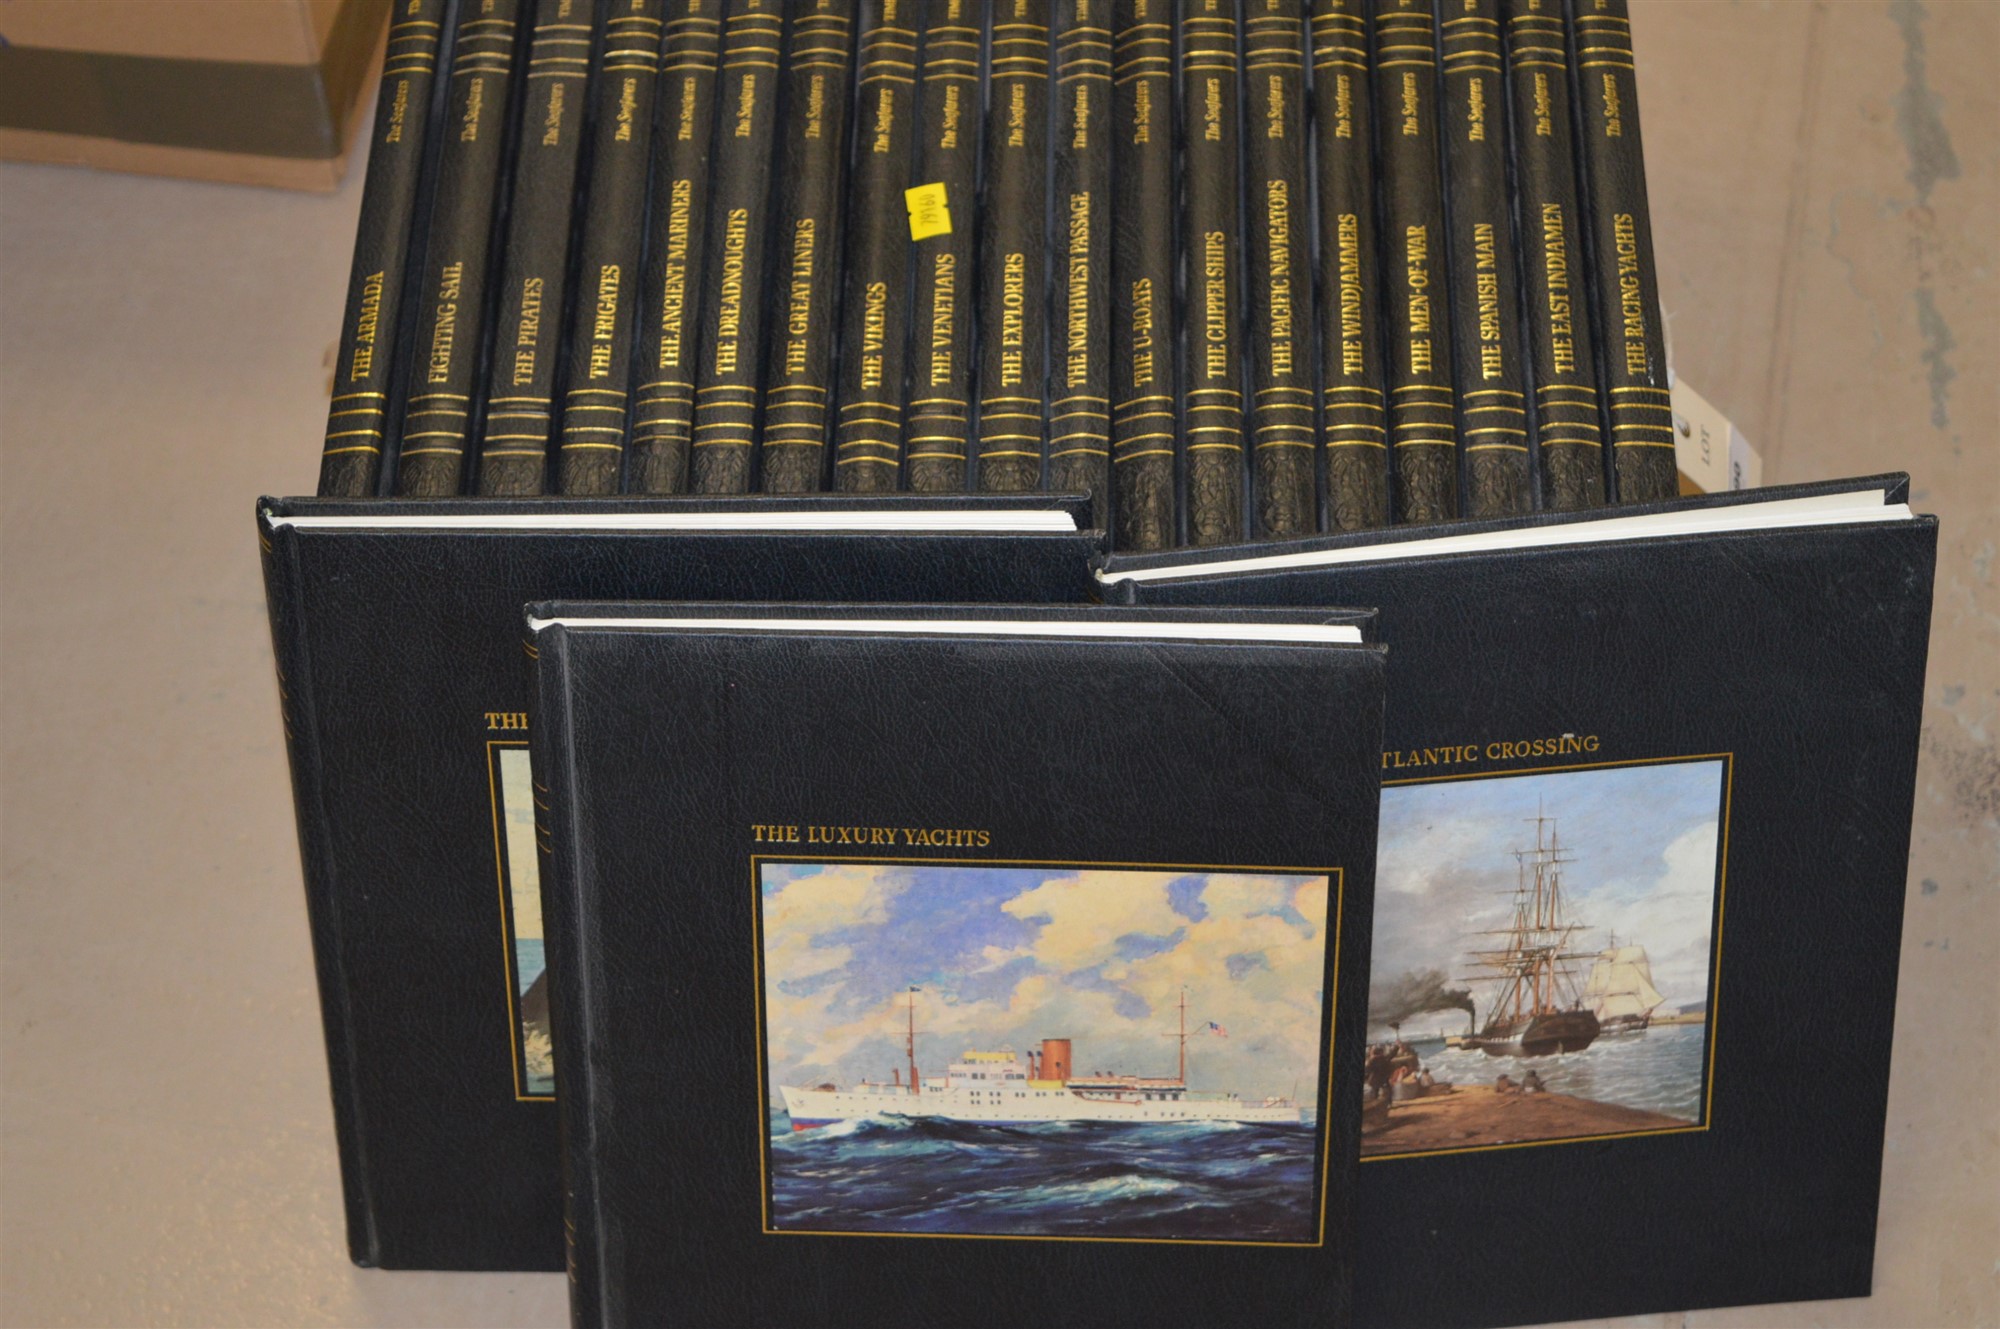 The Seafarers books